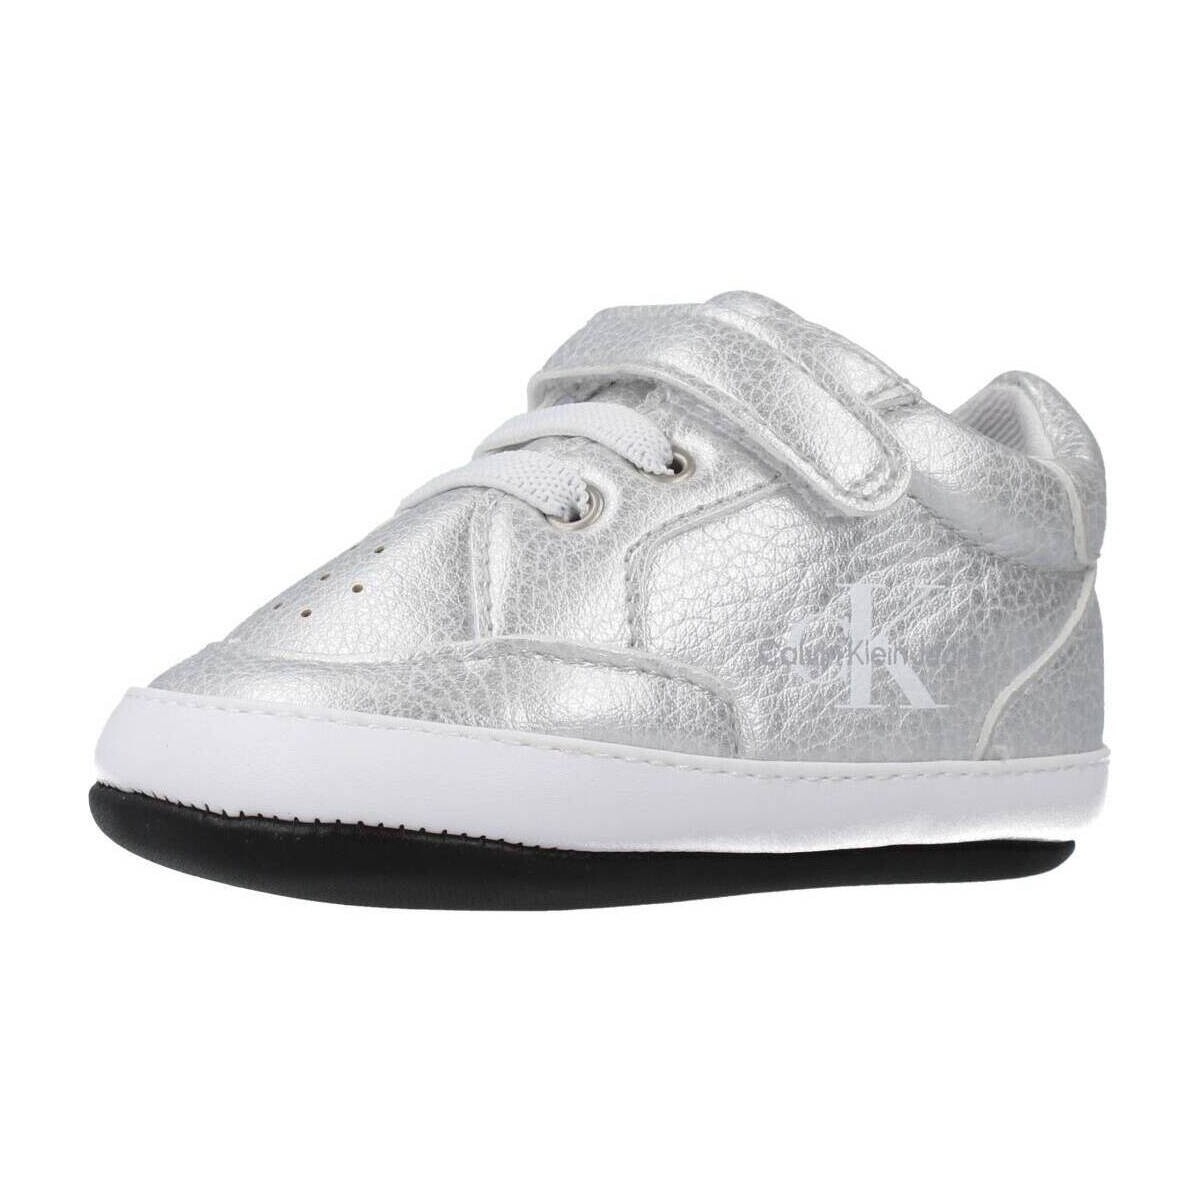 Παπούτσια Αγόρι Χαμηλά Sneakers Calvin Klein Jeans V0A480228 Silver